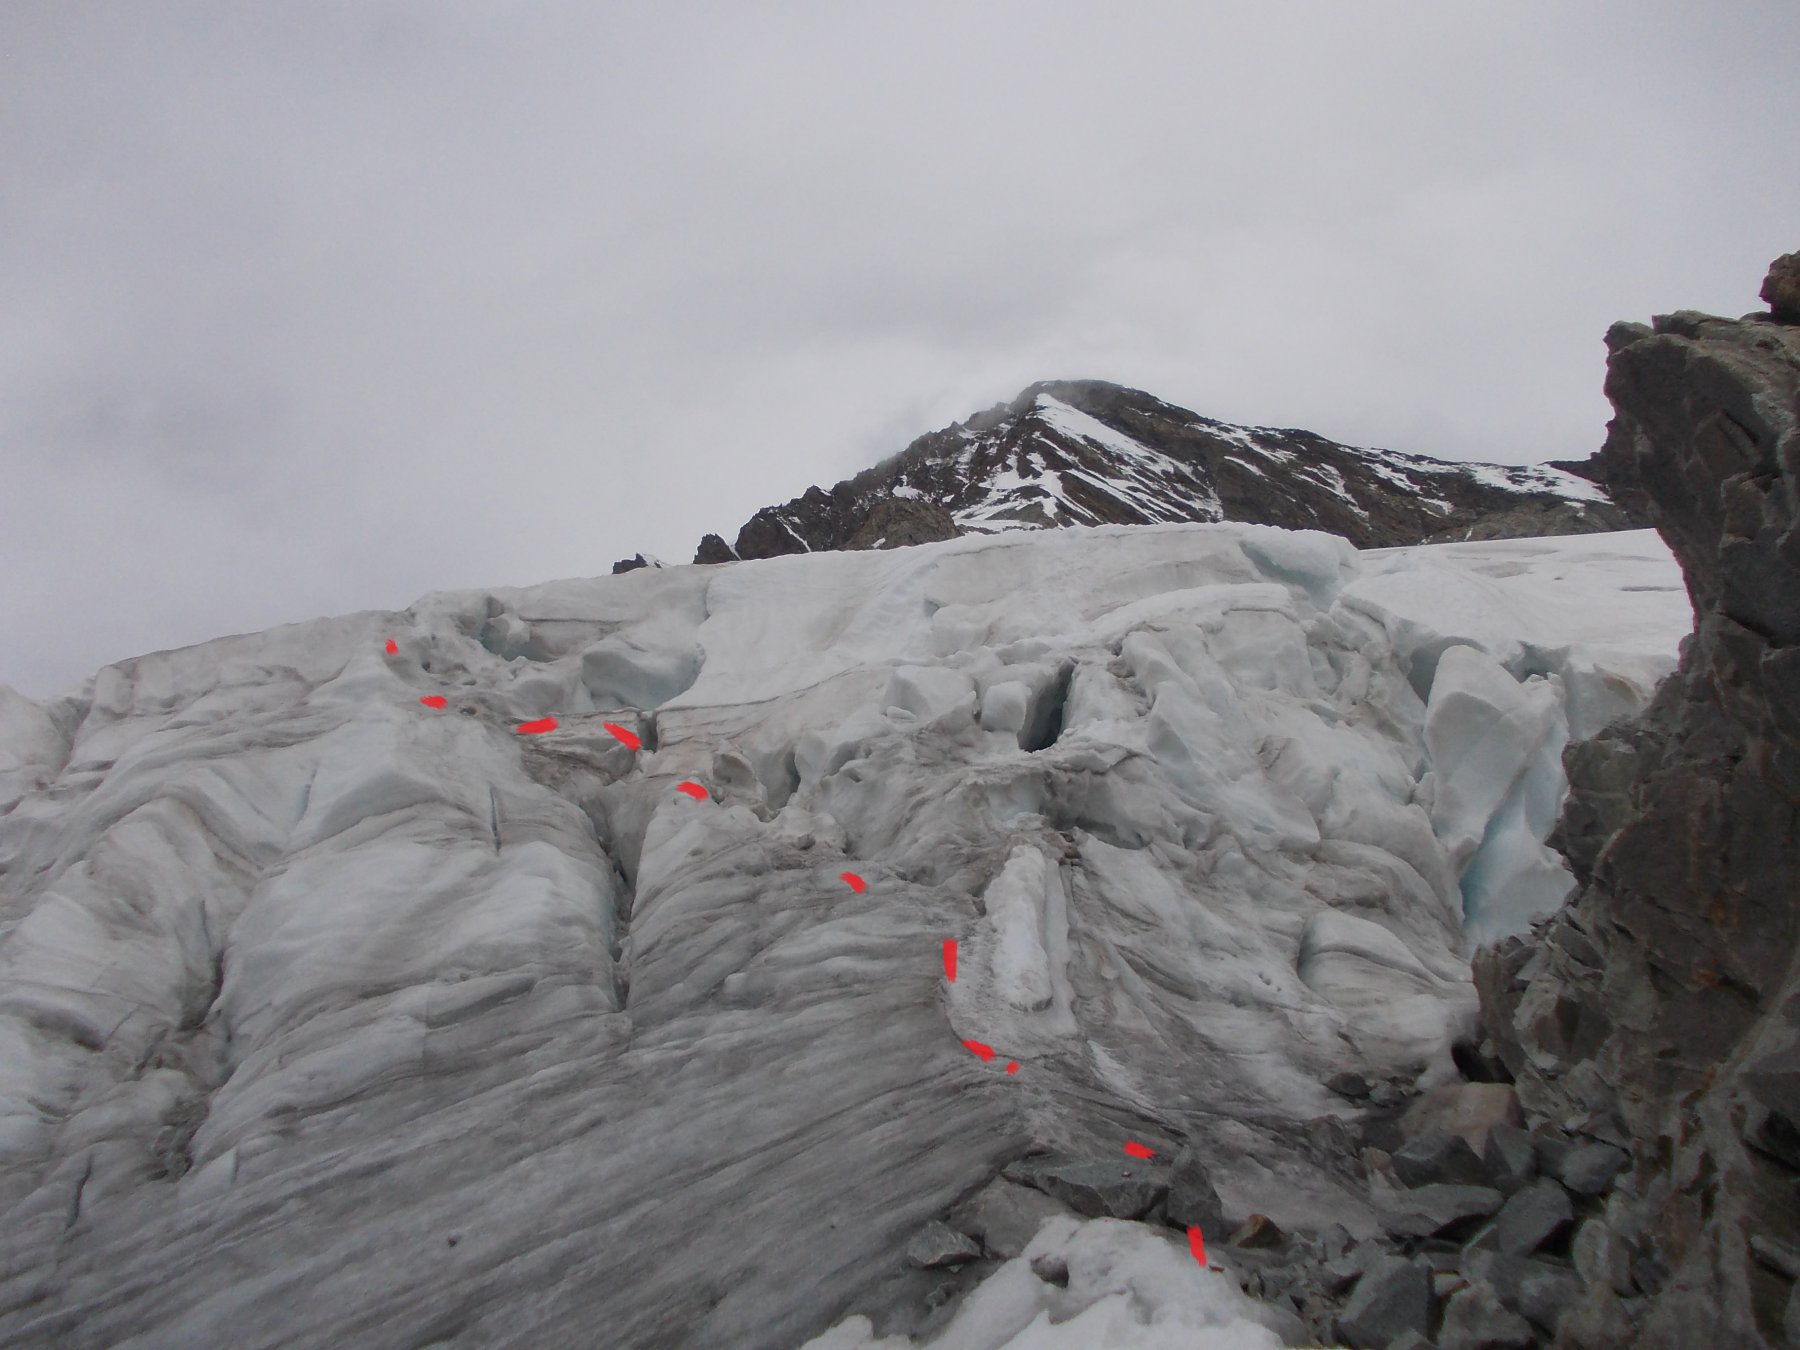 Passaggio delicato su ghiaccio q. 3383 per accedere al ghiacciaio superiore